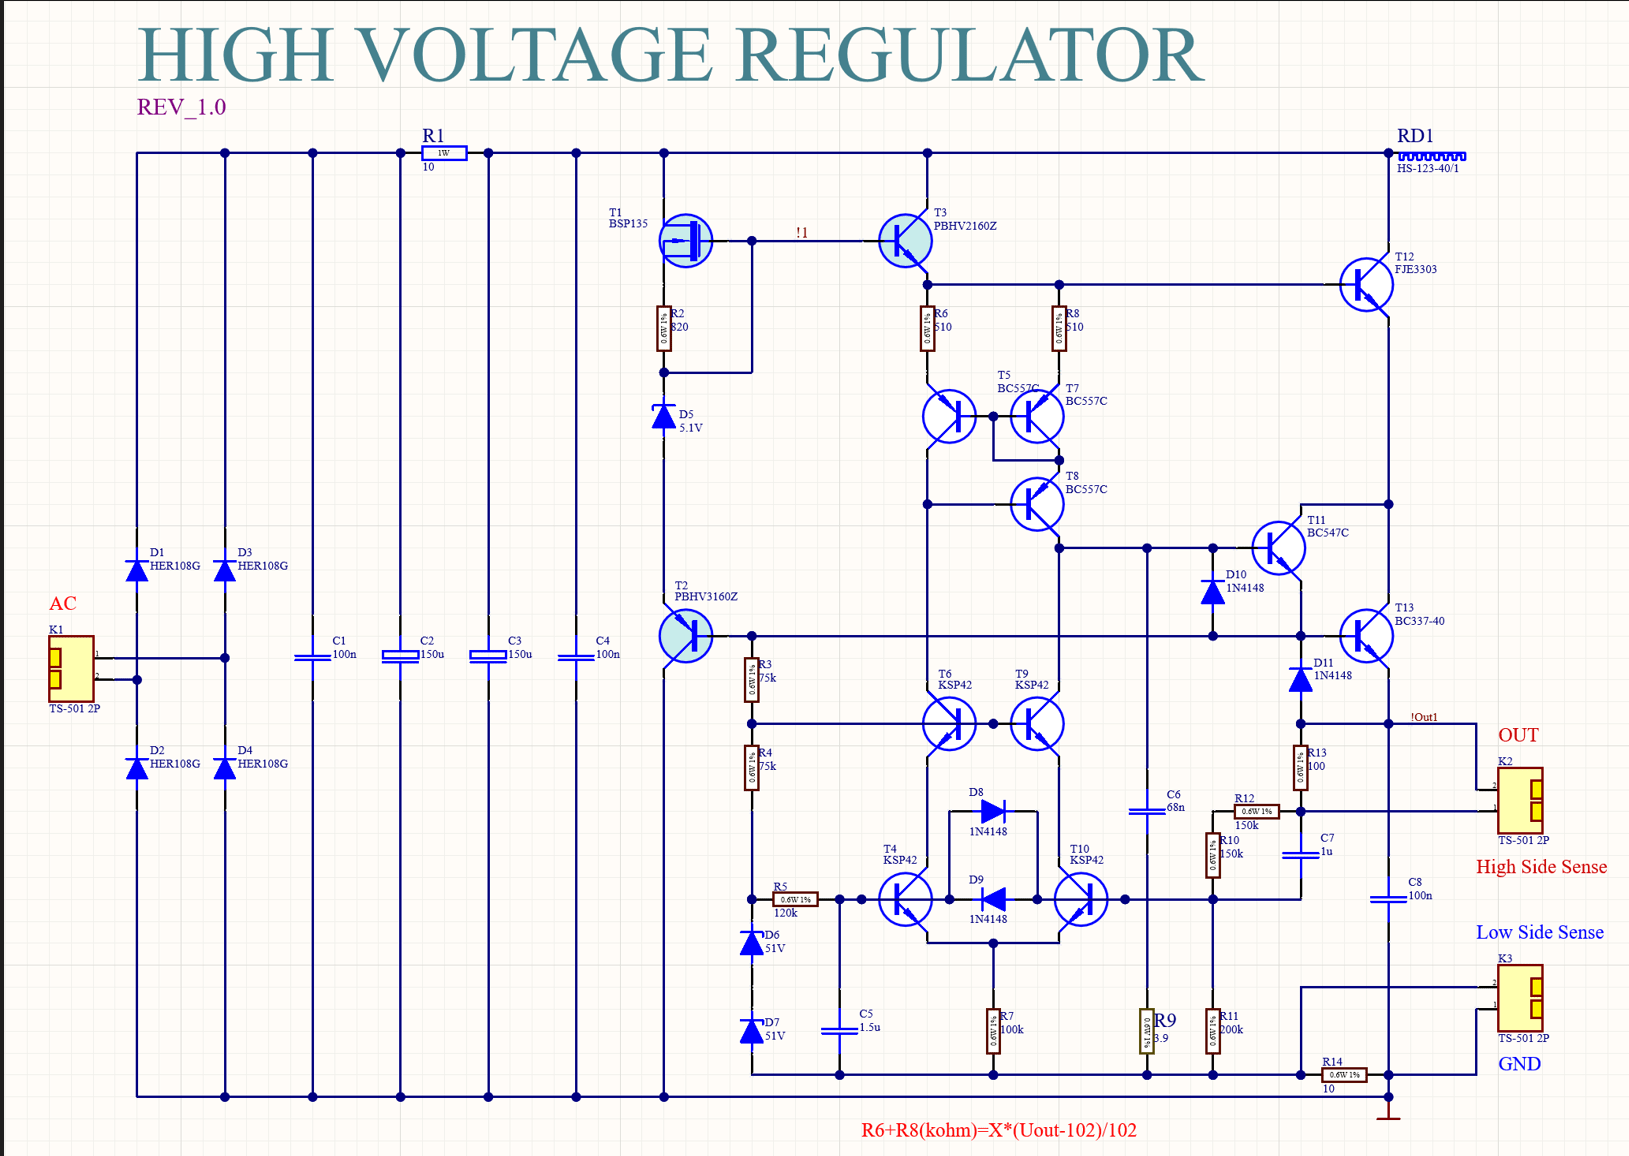 High Voltage Regulator.png